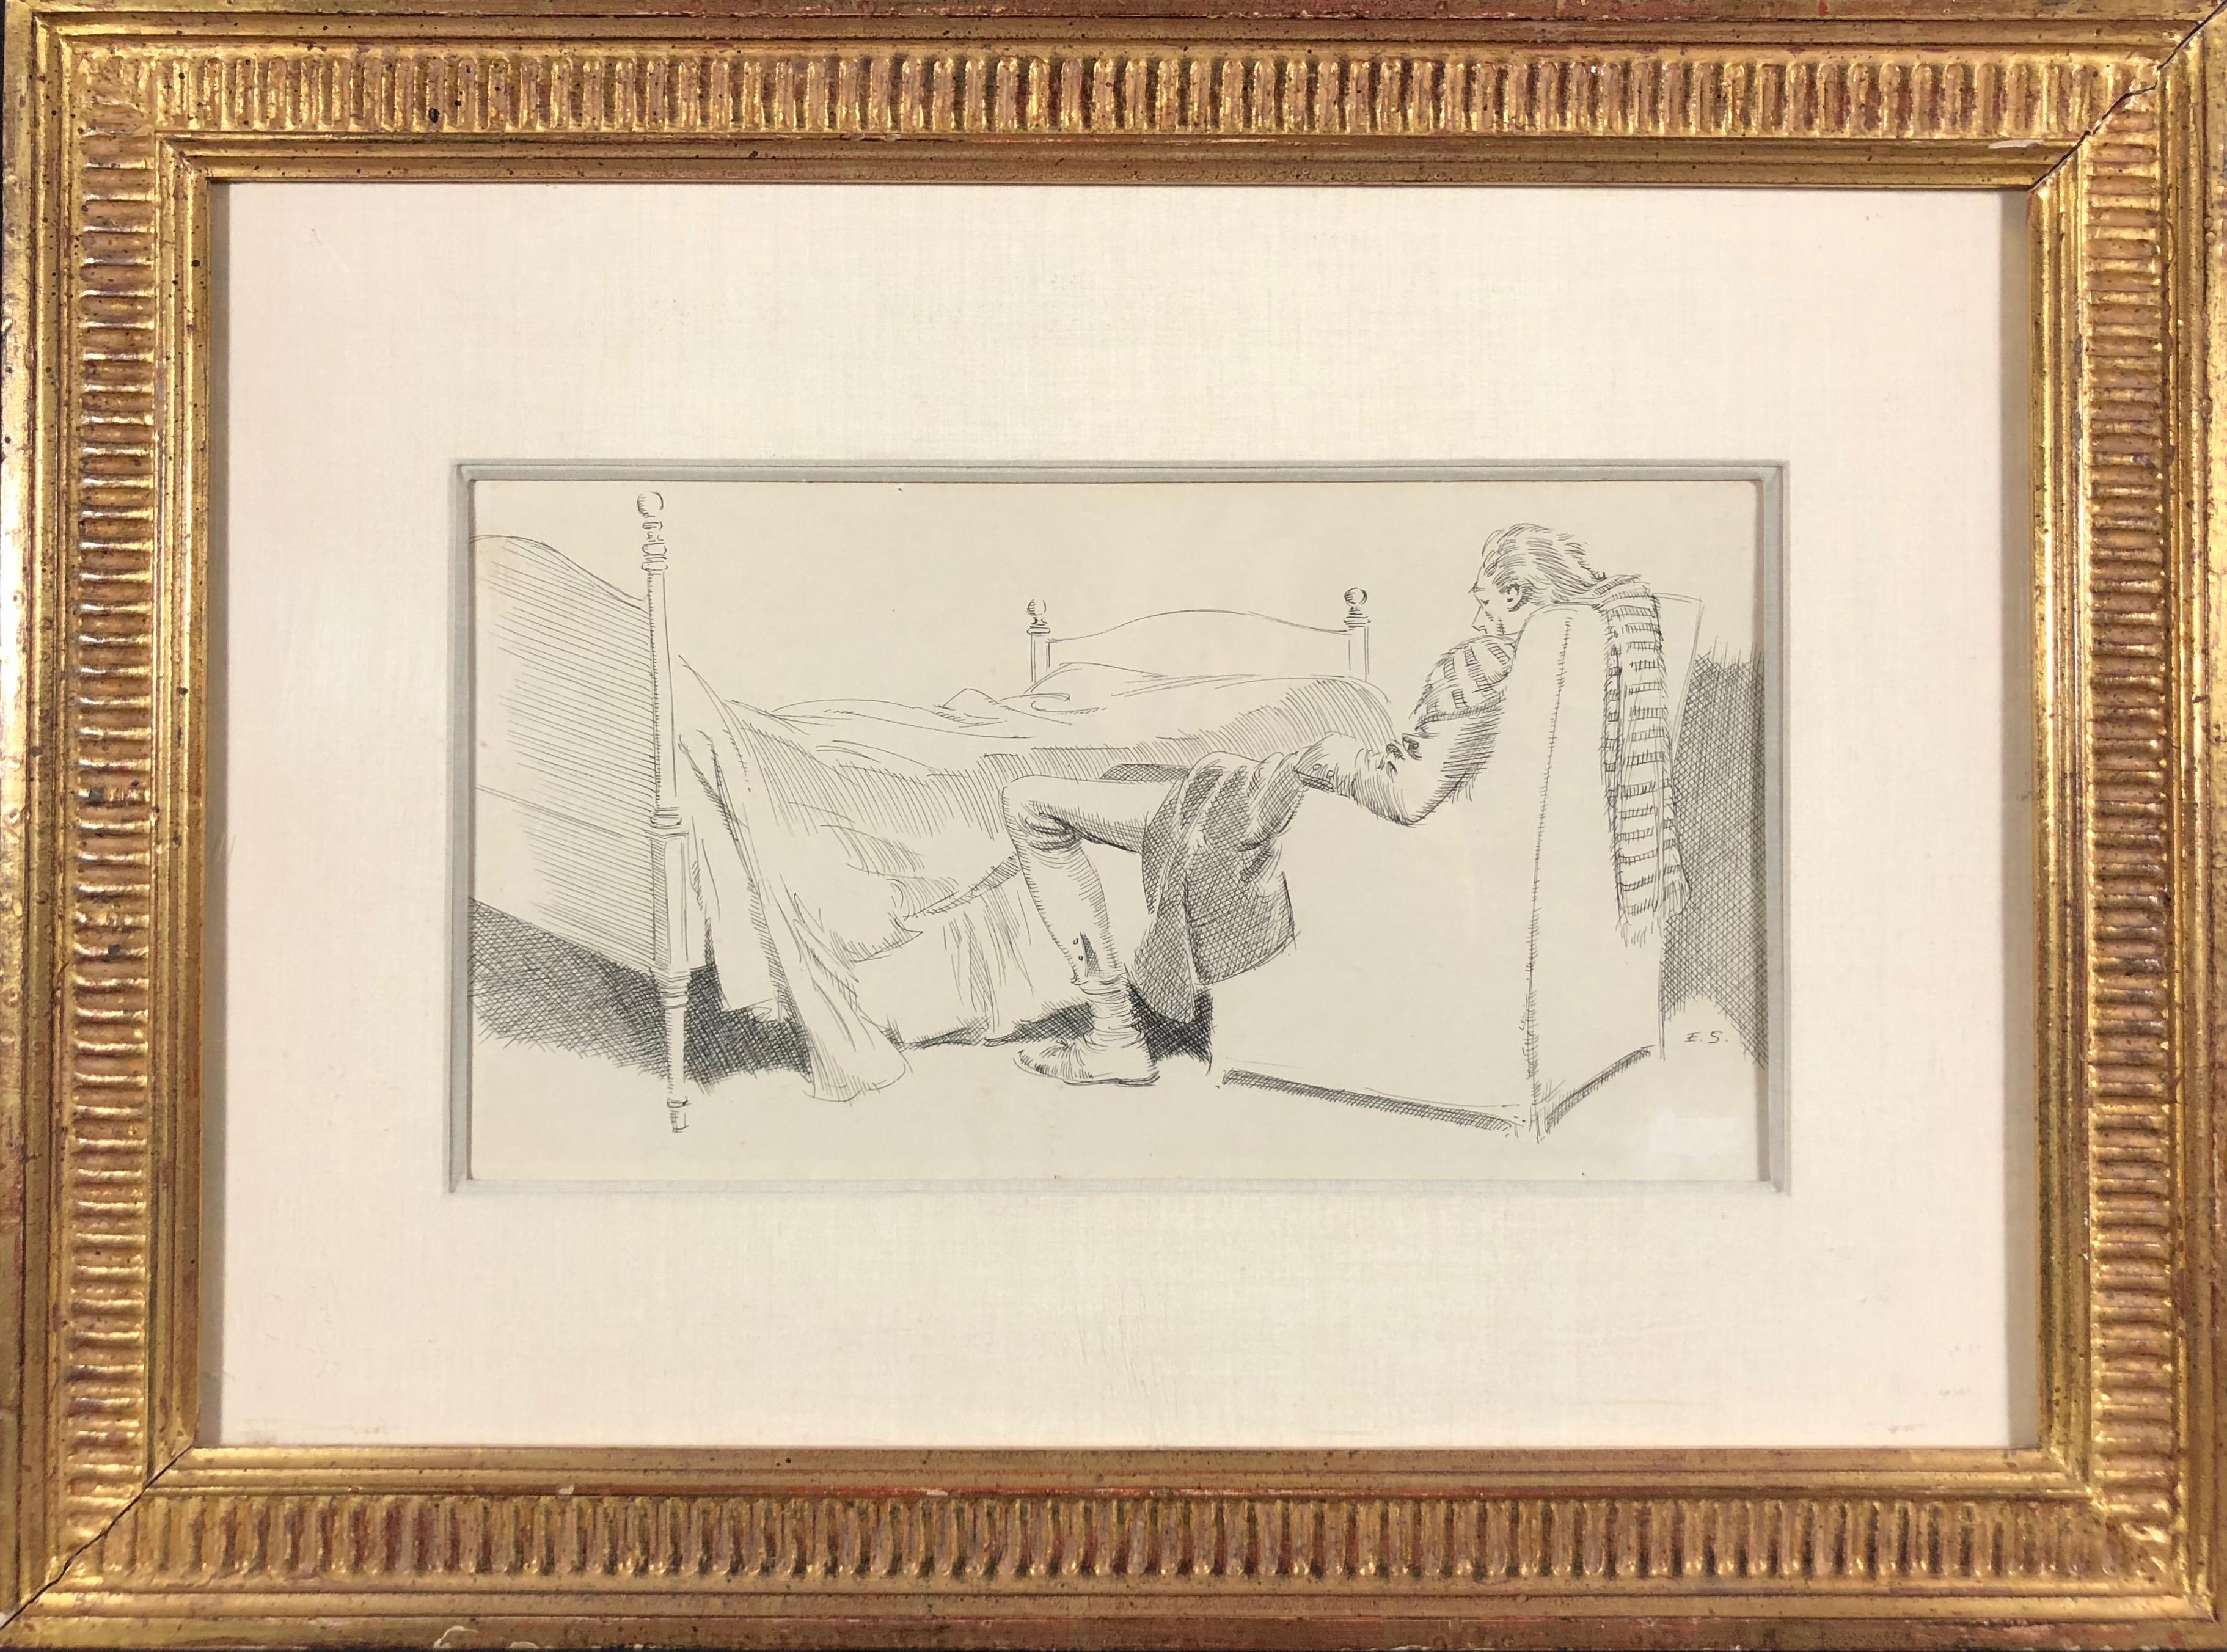 Everett Shinn Figurative Art – Gentleman Napping in a Chair (möglicherweise für Ichabod Crane oder andere Illustrationen)